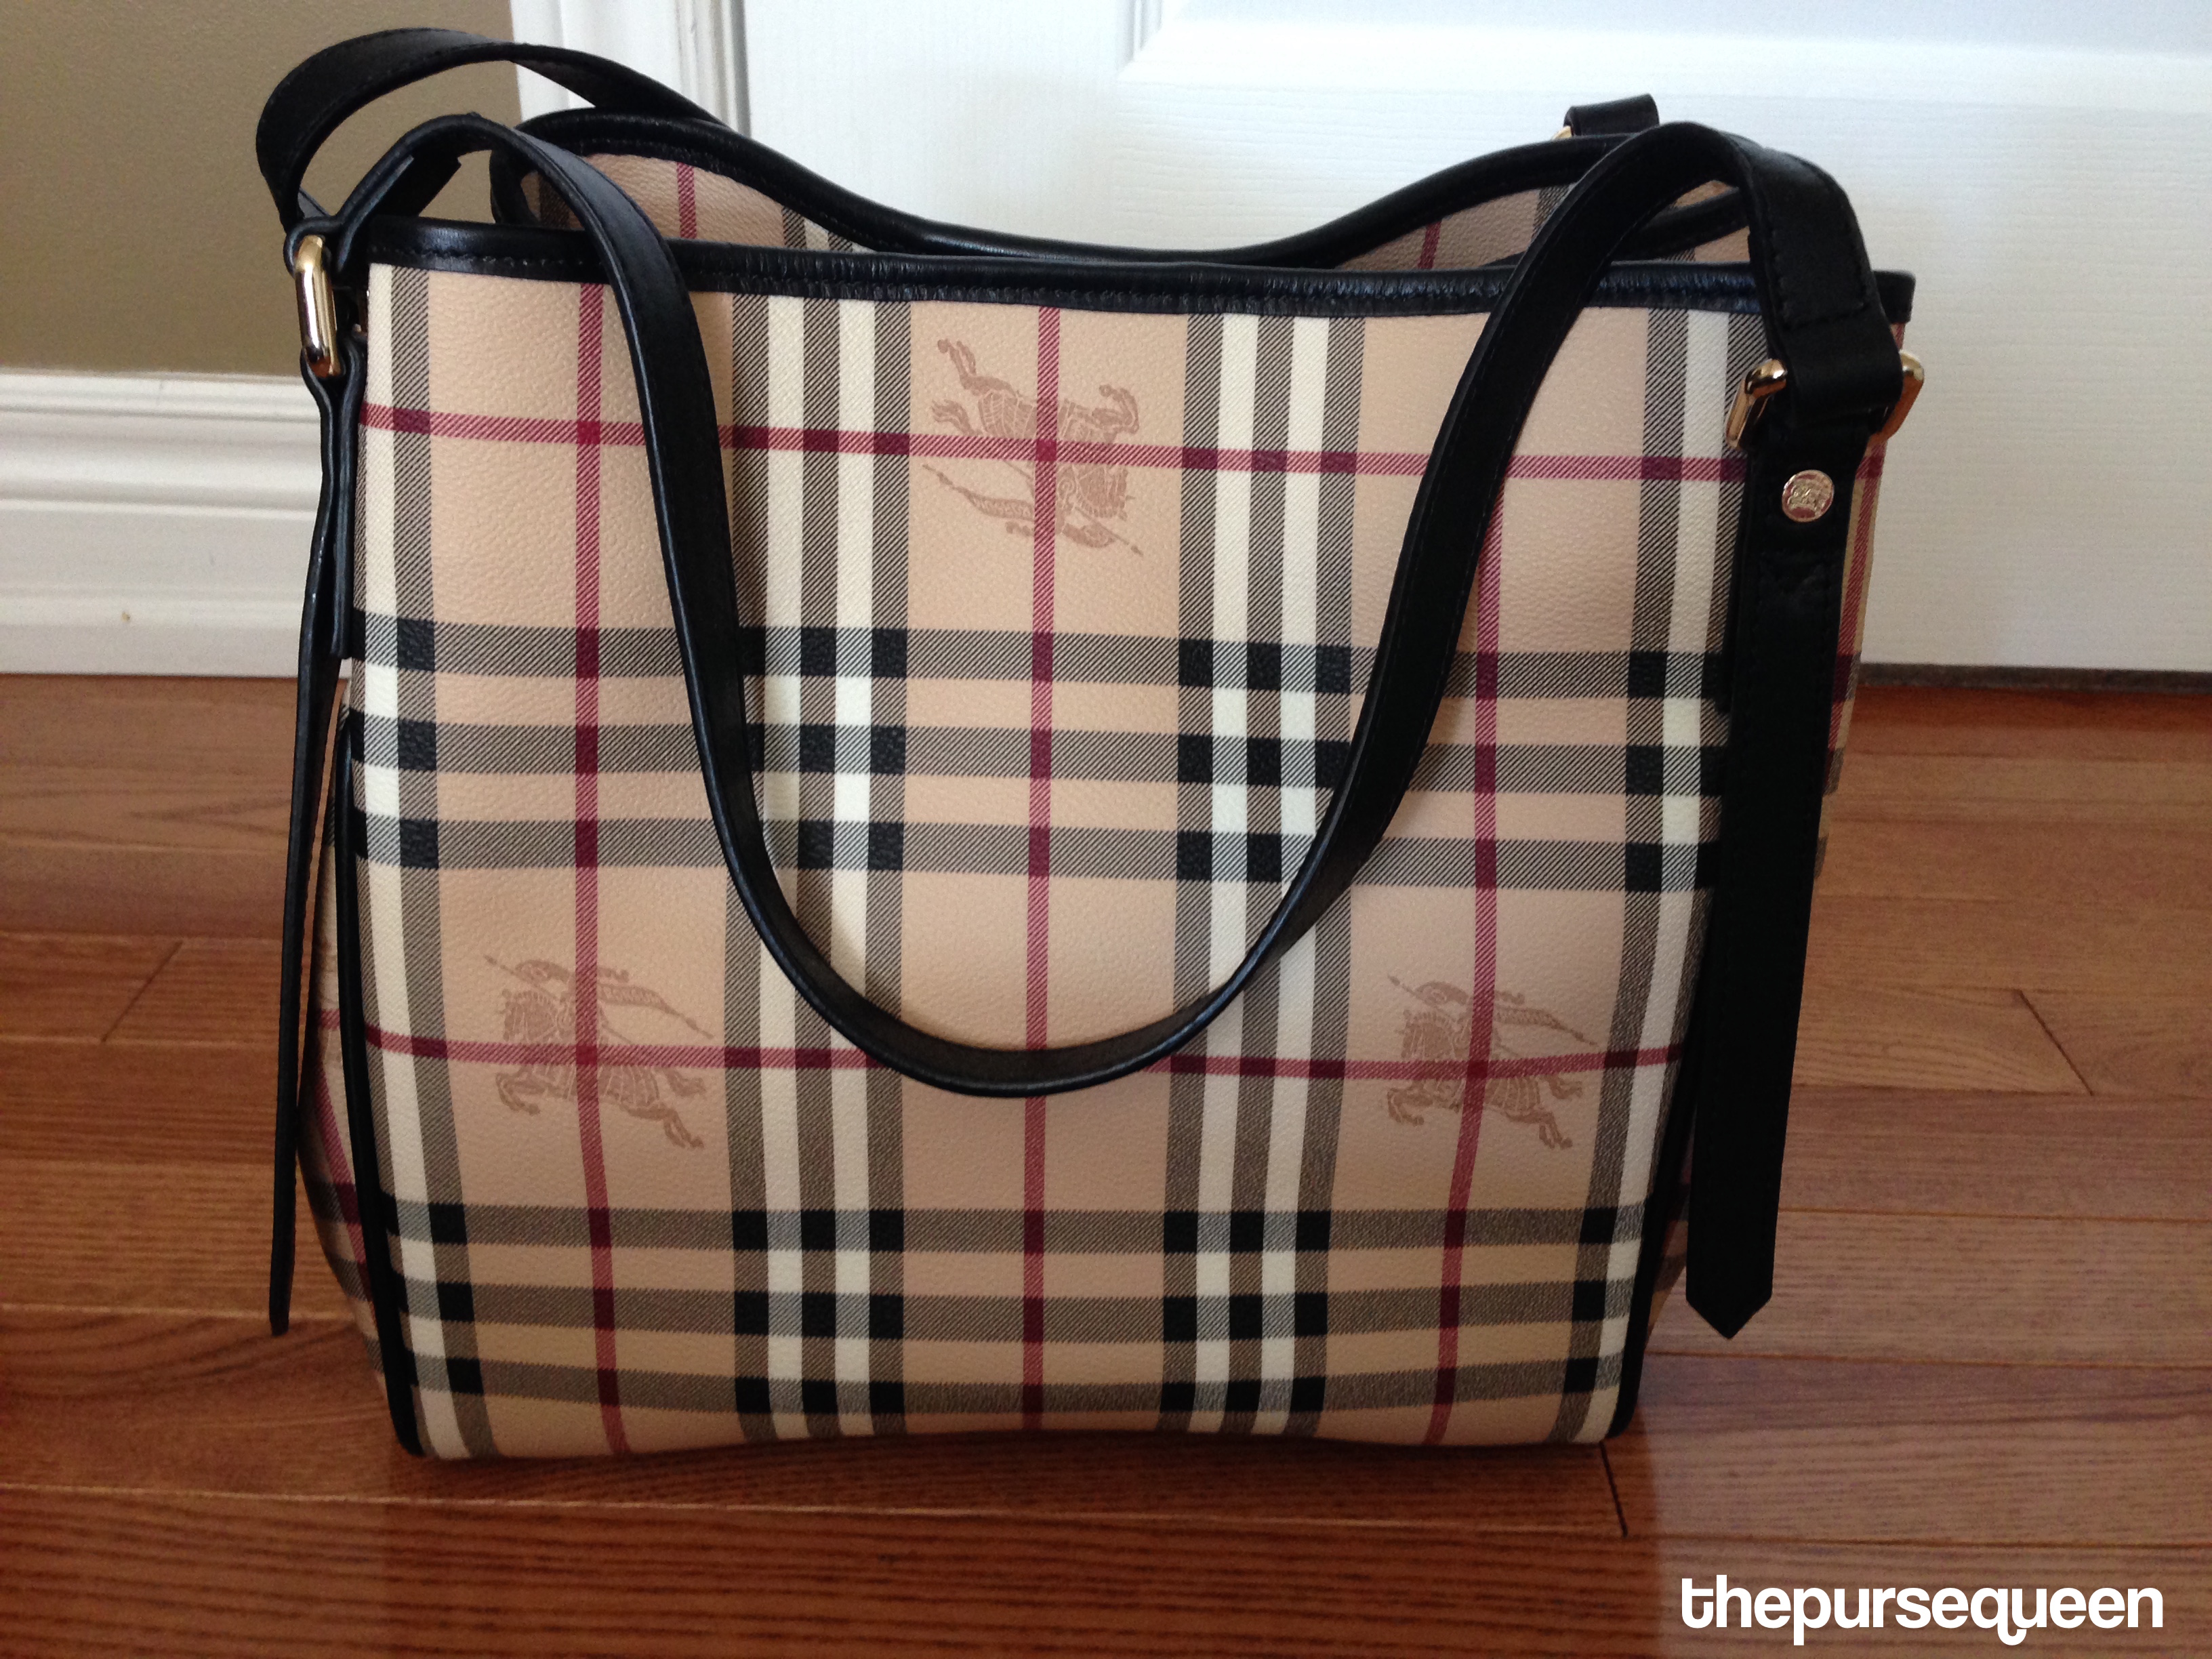 burberry handbag – Authentic & Replica Bags/Handbags Reviews by thepursequeen